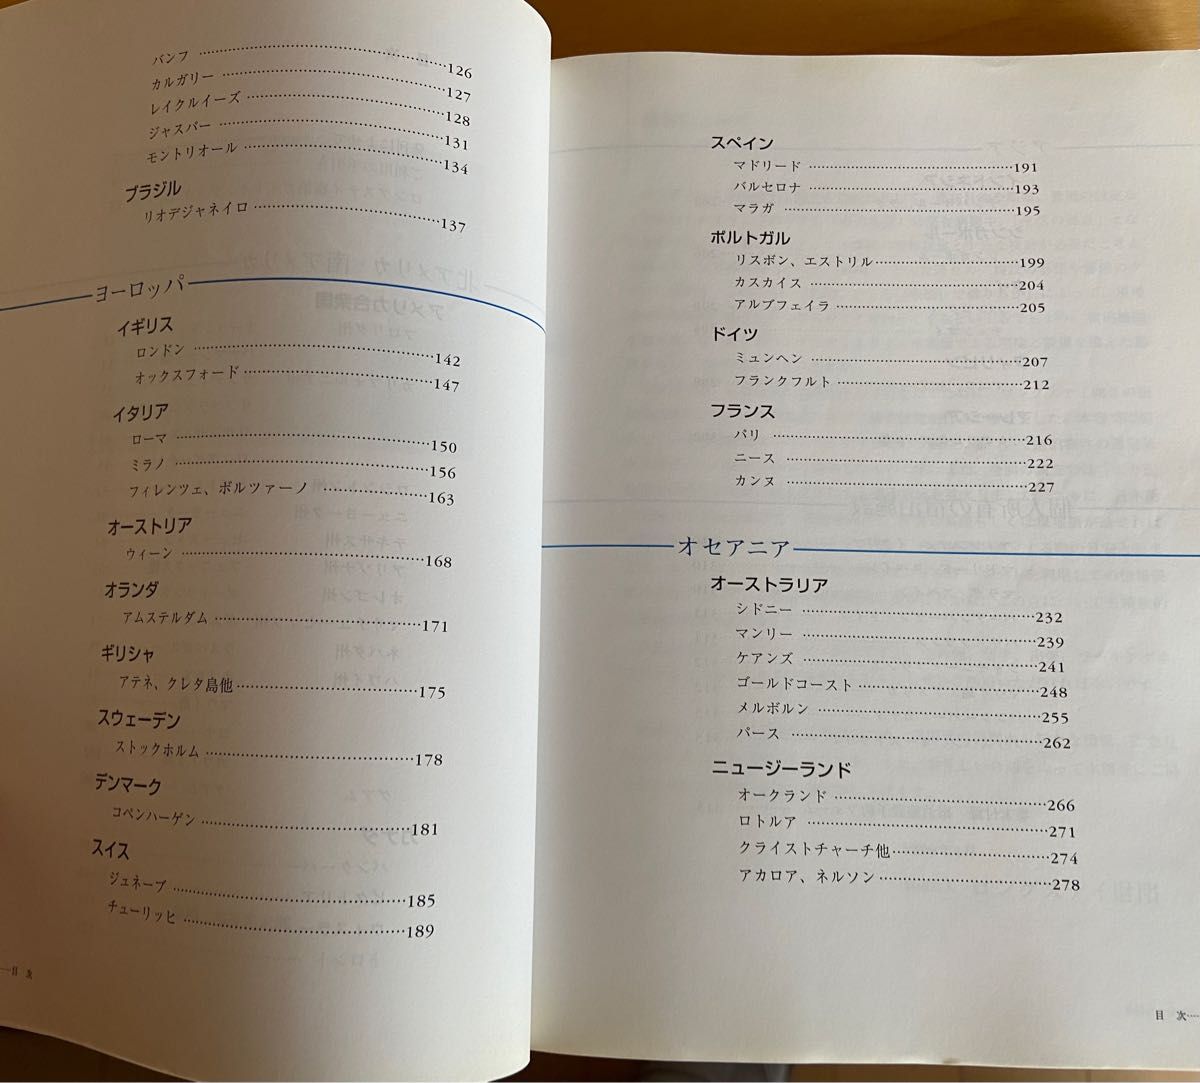  ロングステイ宿泊ガイド 2000 / ロングステイ財団 / ＮＴＴ出版